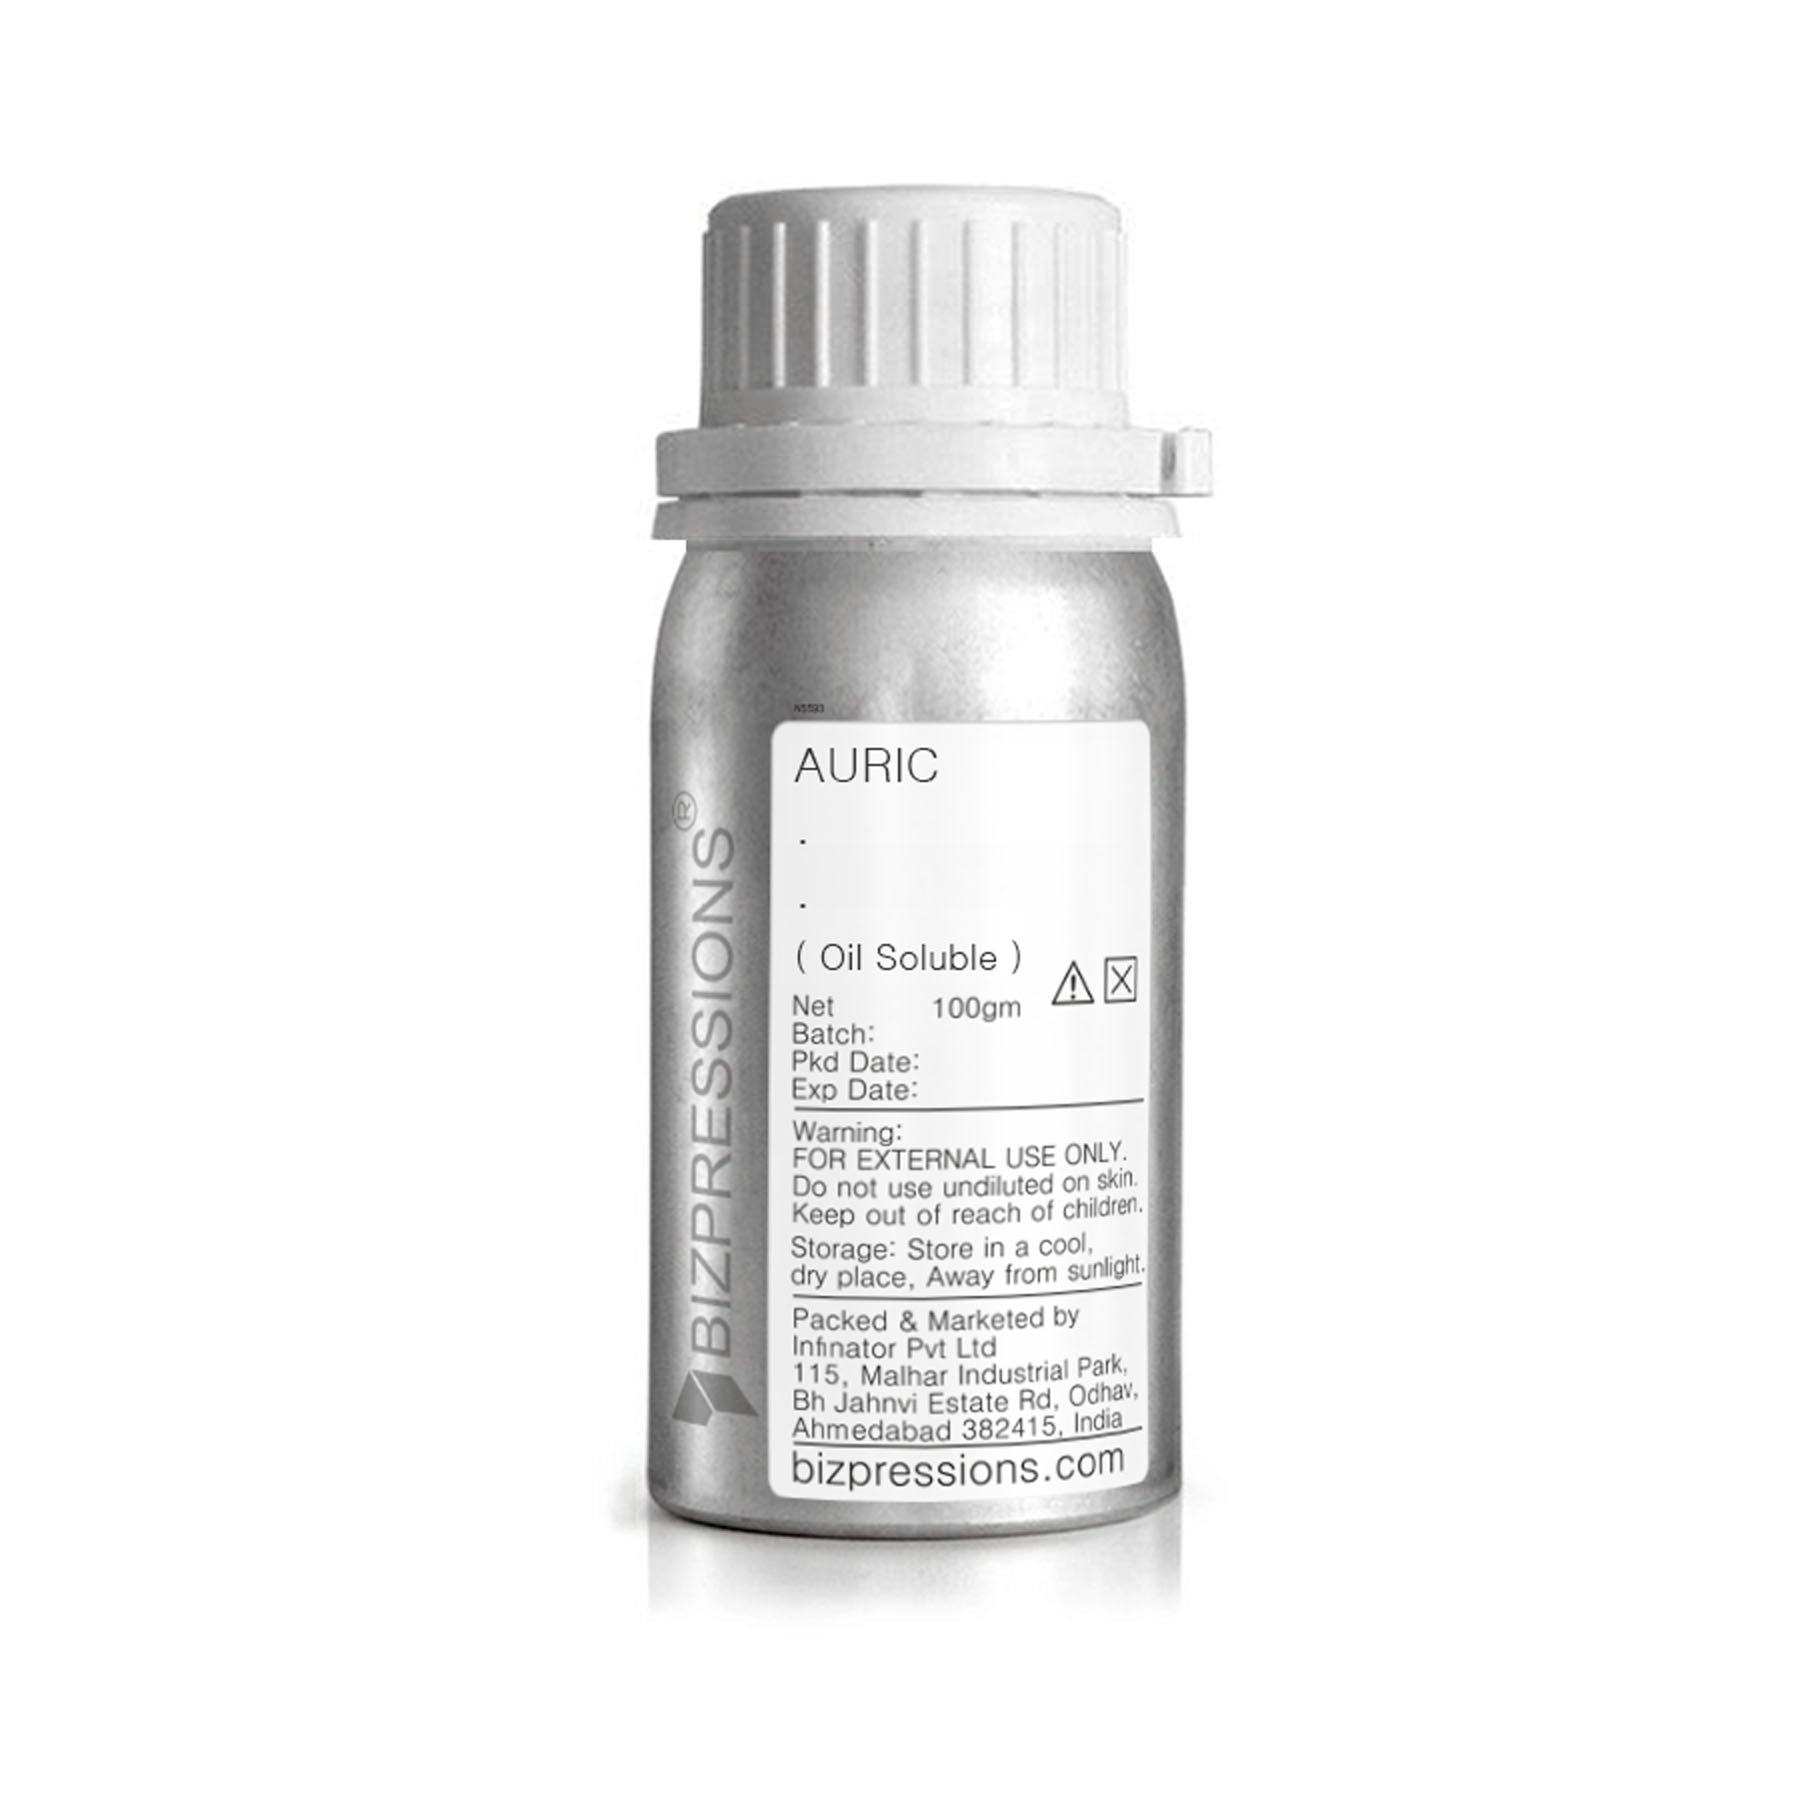 AURIC - Fragrance ( Oil Soluble ) - 100 gm